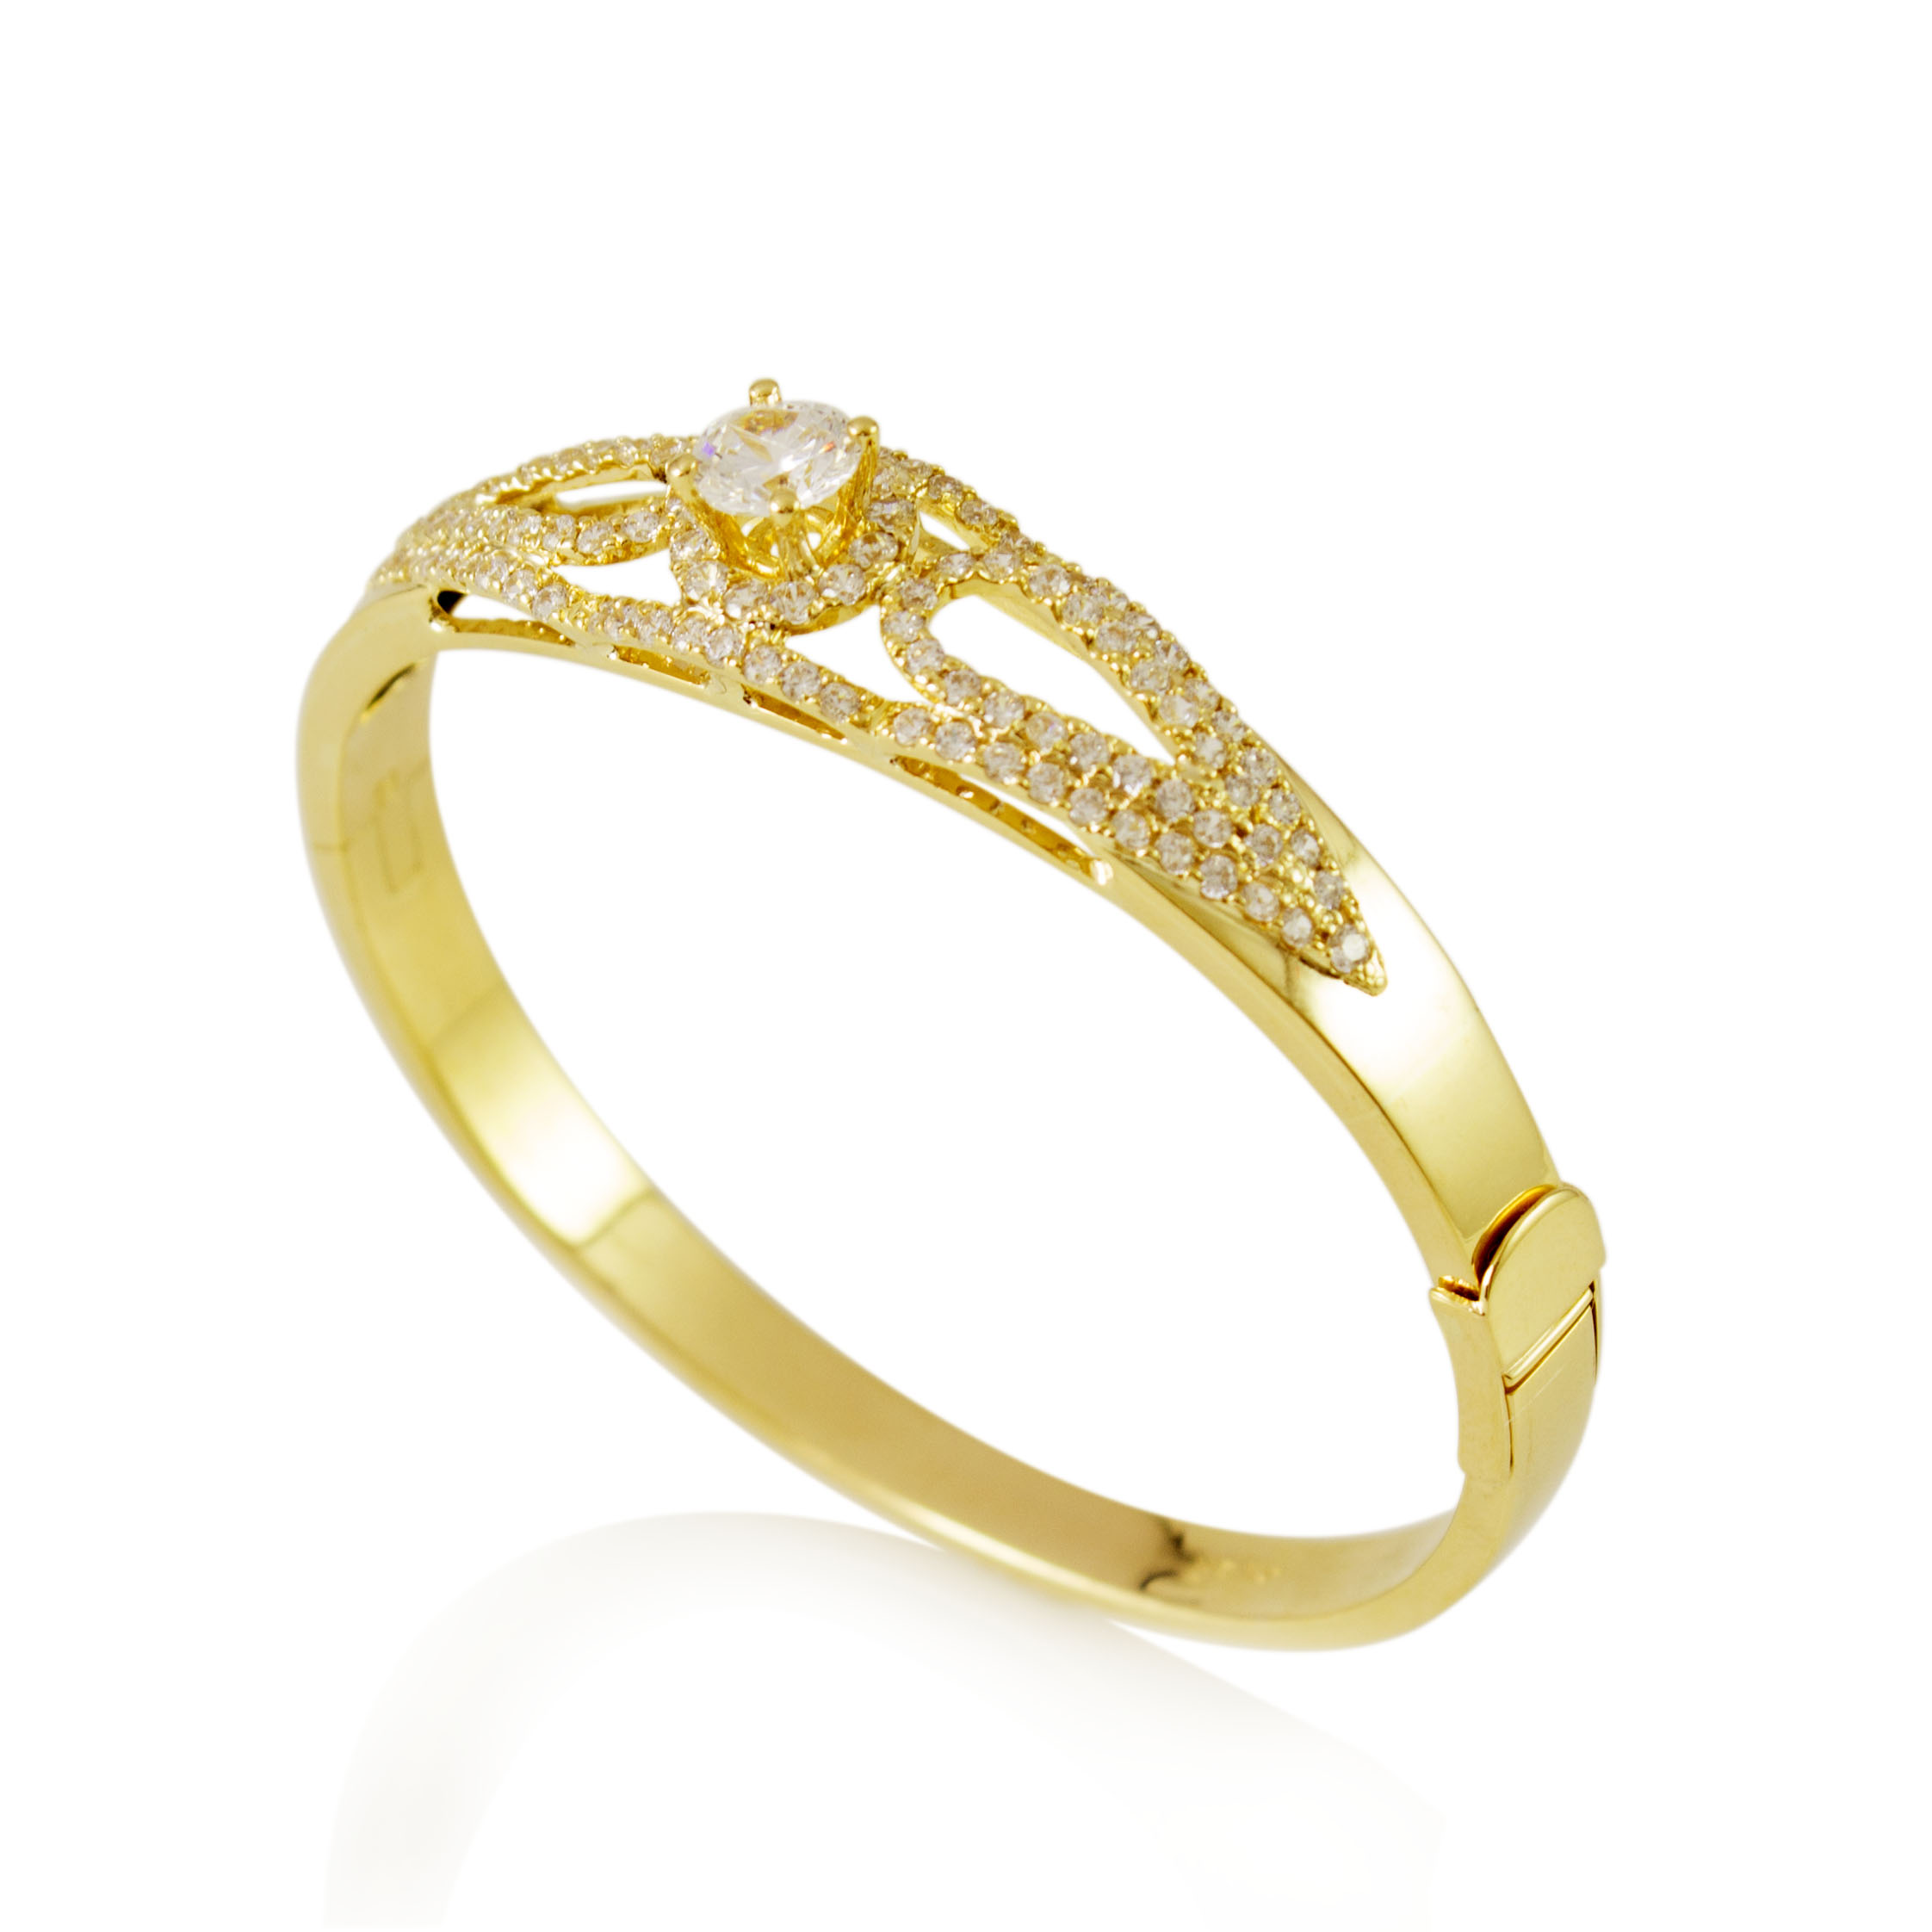 Vòng tay nữ kiểu mạ vàng 18k: Vòng tay nữ kiểu mạ vàng 18k với thiết kế đơn giản nhưng tinh tế là sự lựa chọn hoàn hảo cho các quý cô hiện đại. Với chất liệu vàng 18k mạ vàng, sản phẩm mang đến sự quý phái, sang trọng và cá tính cho người mang.